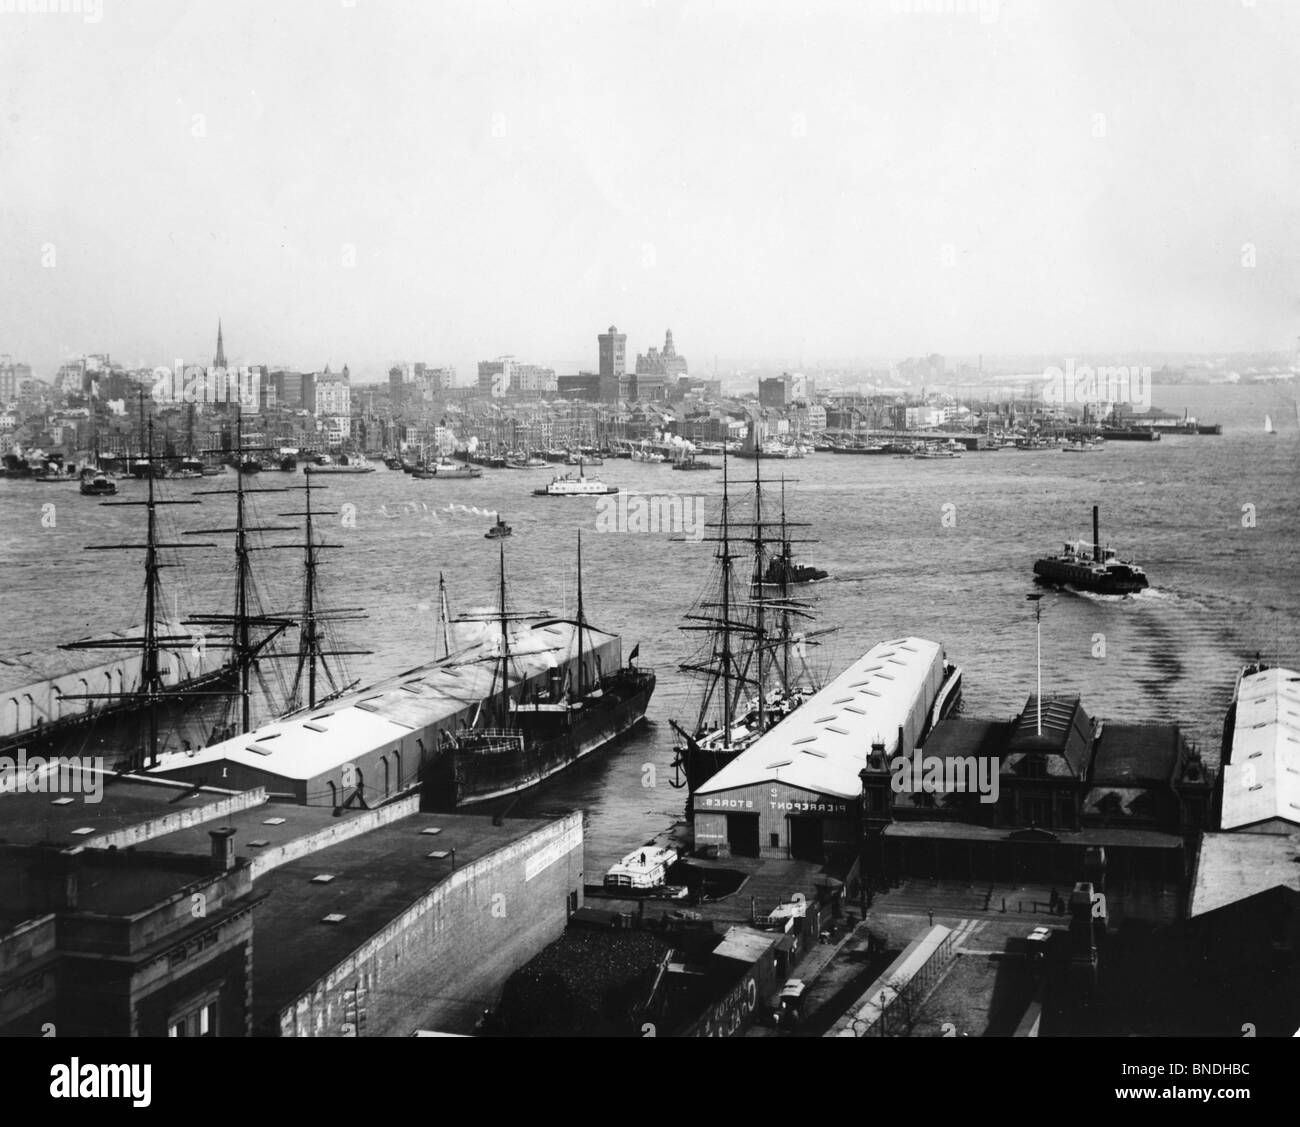 Tall ships docked in a harbor, New York Harbor, New York City, New York, USA Stock Photo